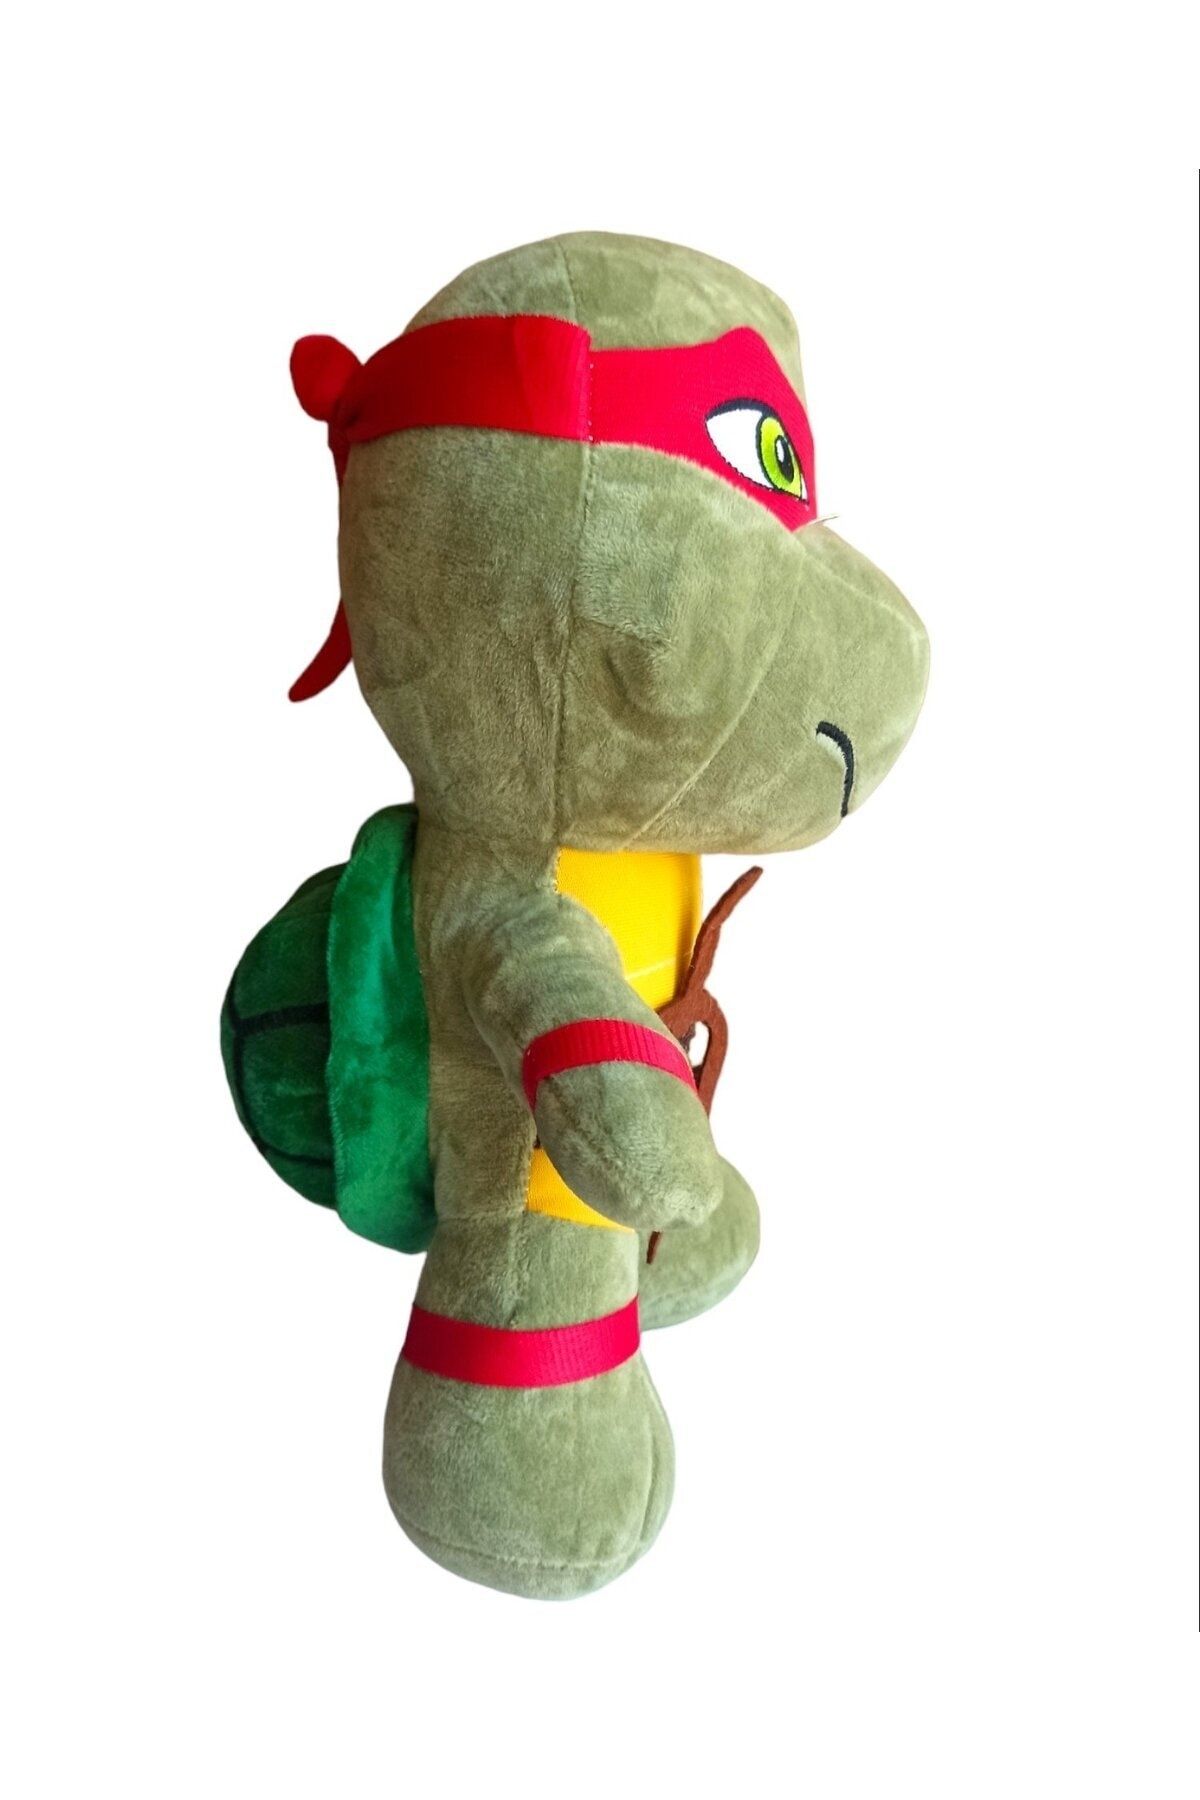 35cm Teenage Mutant Ninja Turtles Plush Doll Toy 